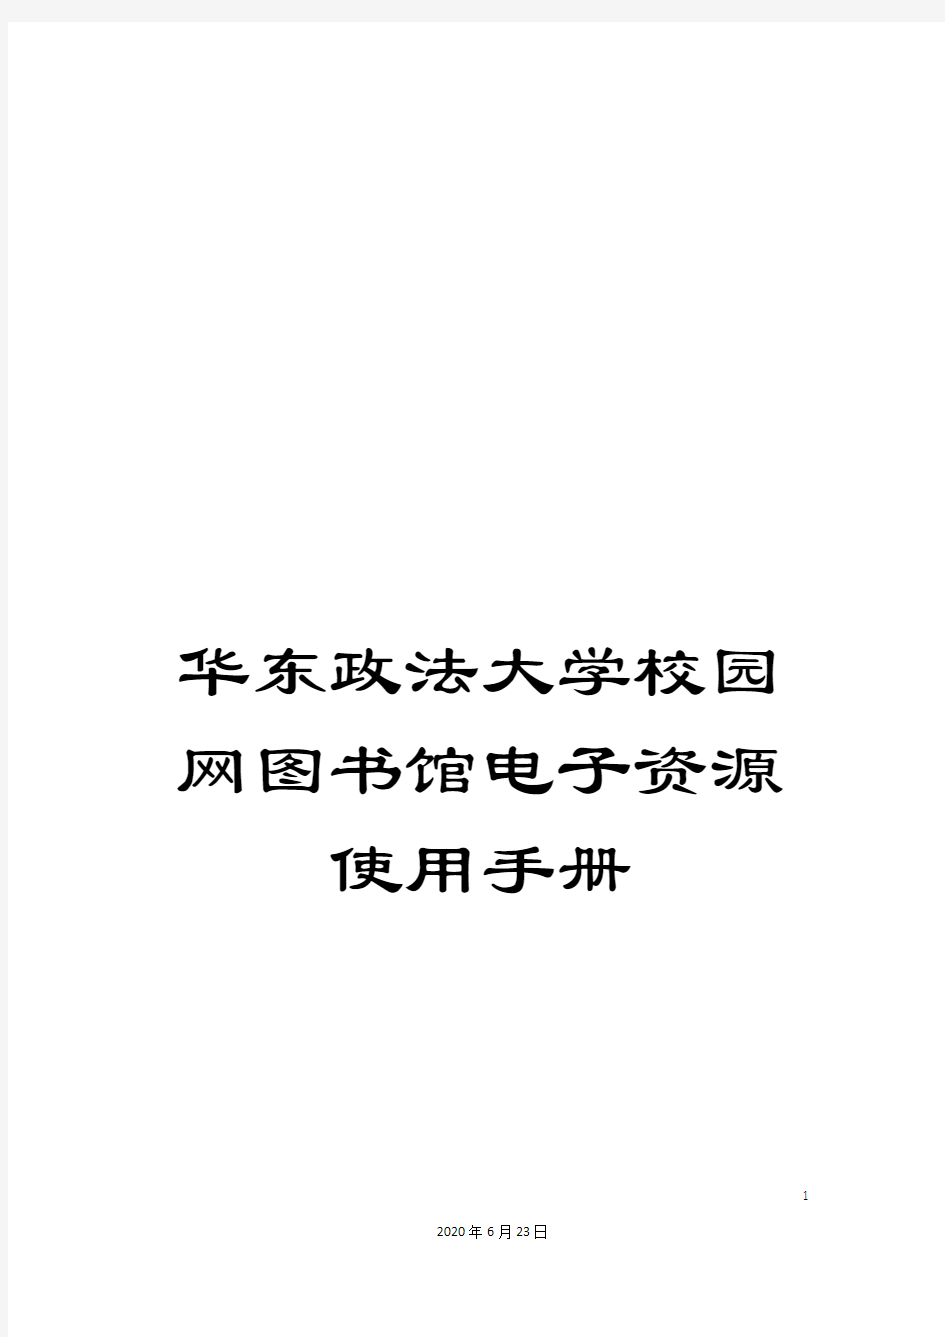 华东政法大学校园网图书馆电子资源使用手册